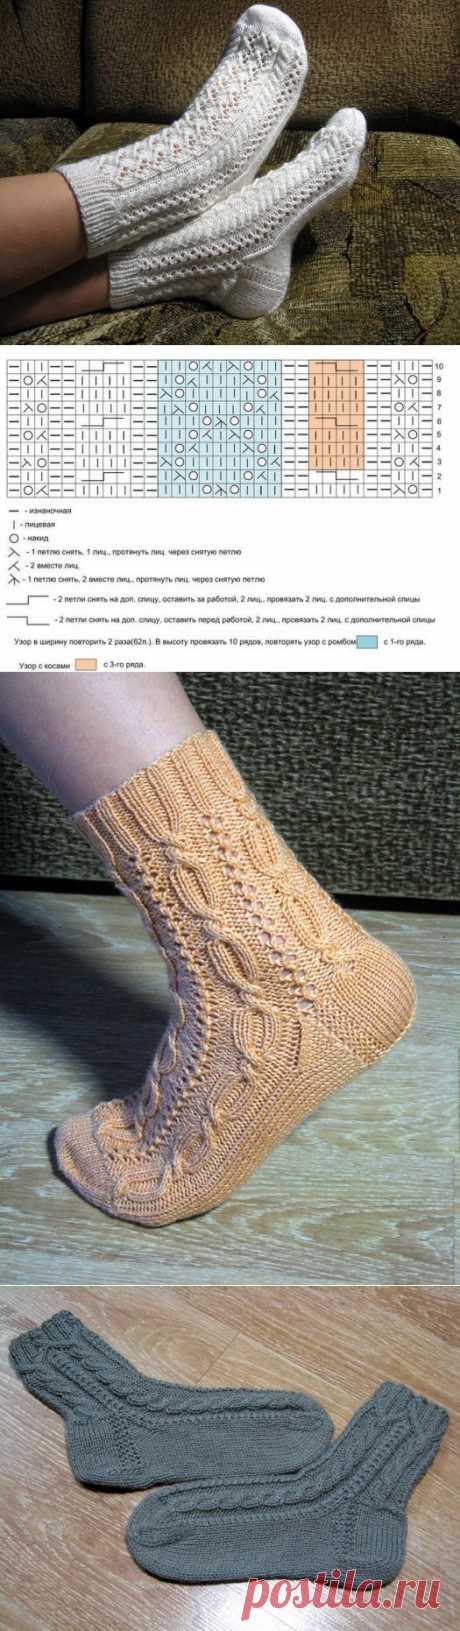 Ажурные носки + схемы от Лены-Изольды (3 вида)